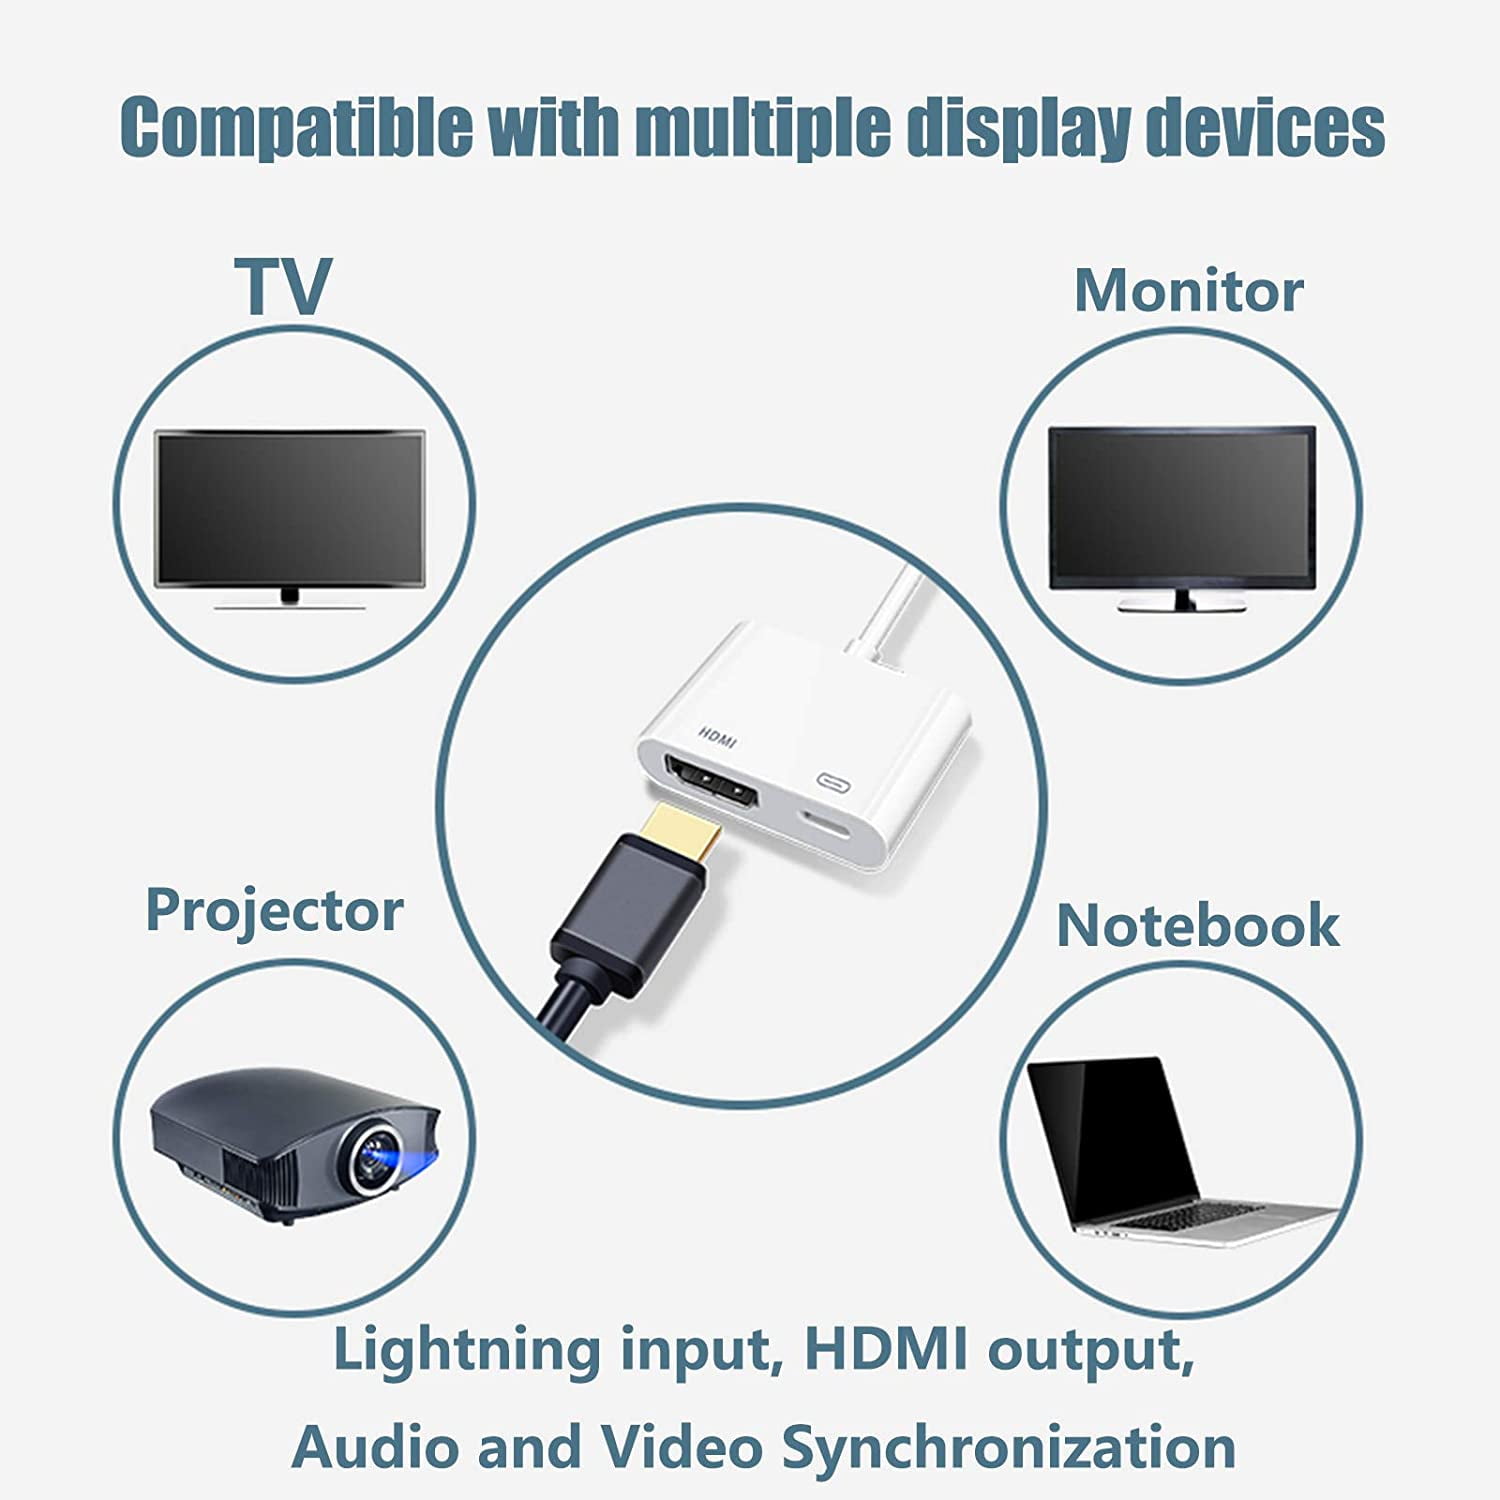 Apple Lightning Digital AV Adapter (HDMI) desde 49,80 €